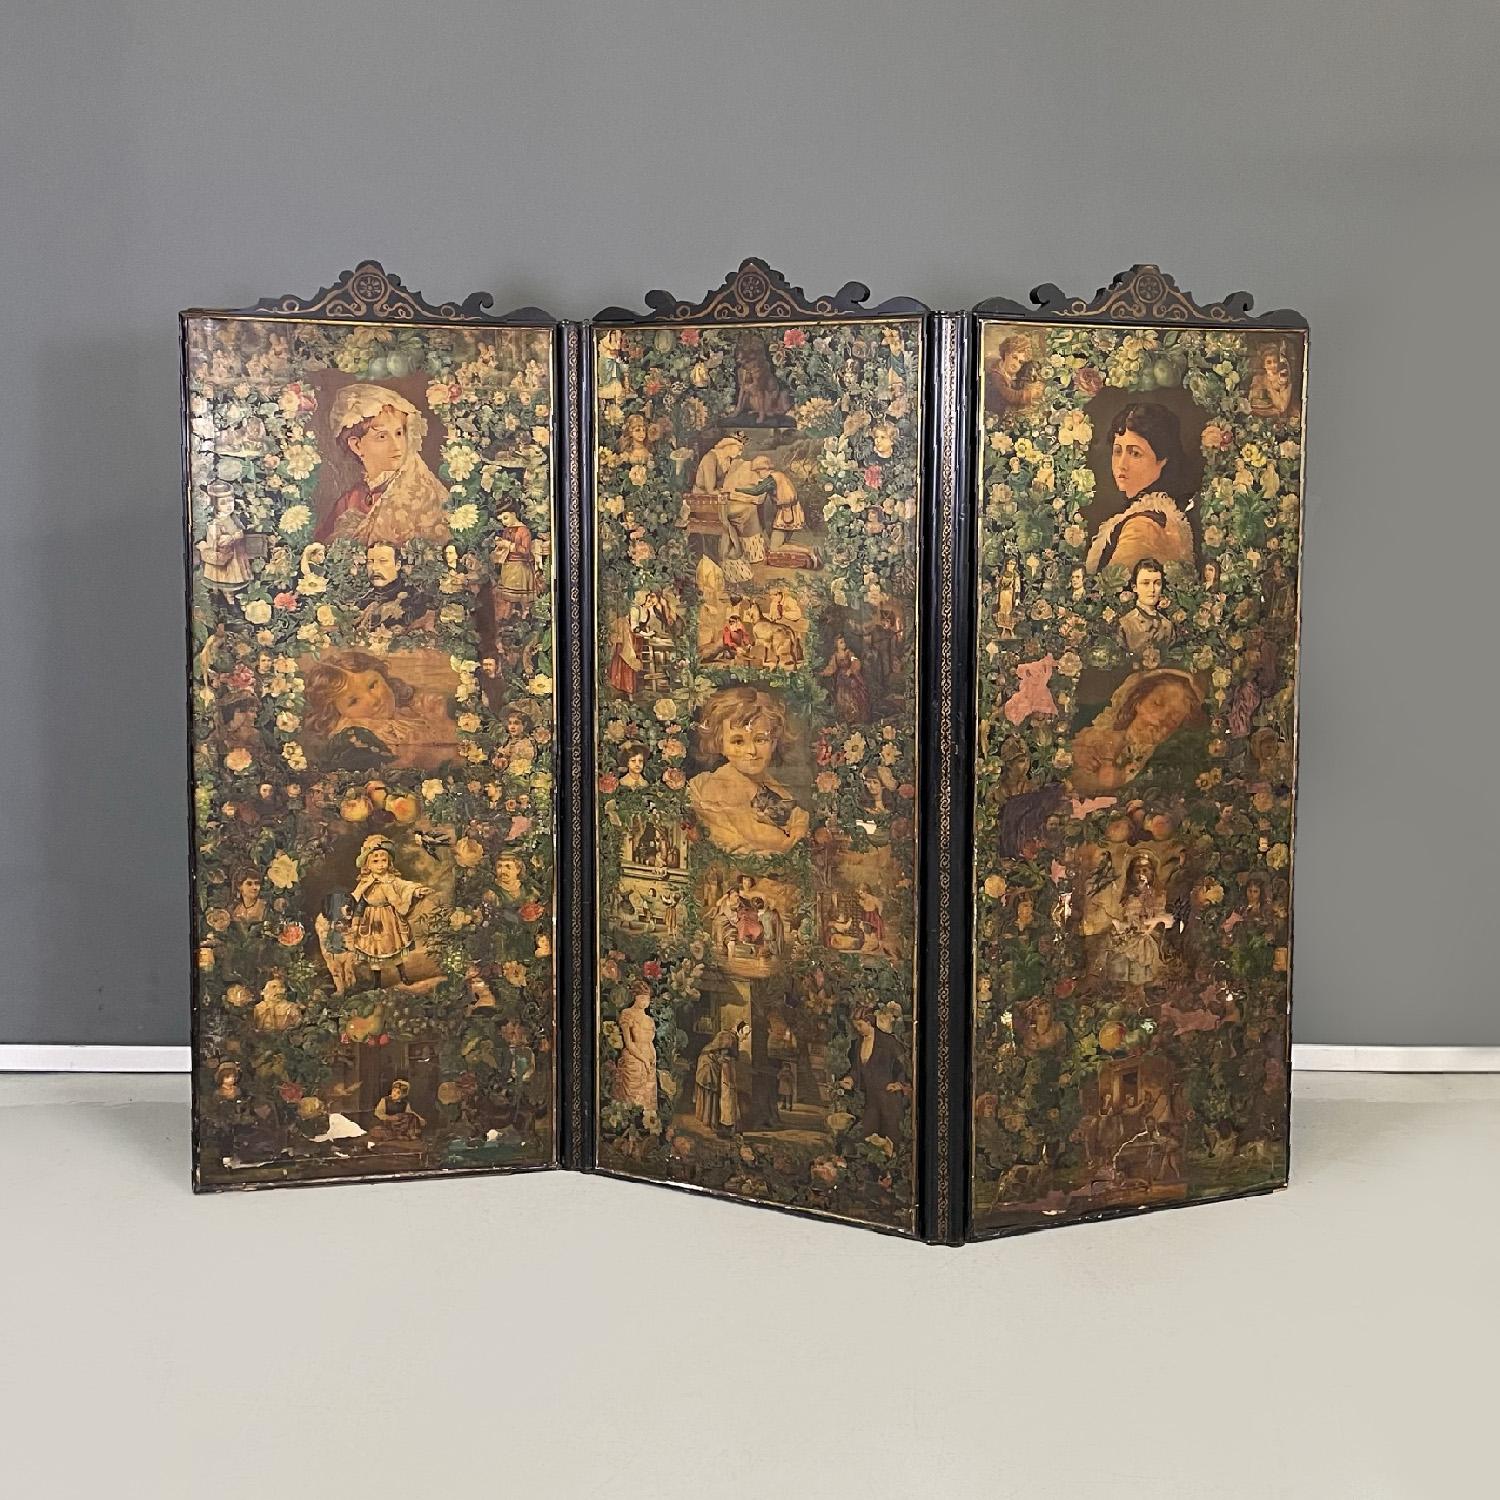 Englischer Holzschirm mit Porträts und Blumenkollage, 1800er Jahre
Dreitüriger Paravent mit Holzstruktur und vollständig mit der Technik der Collage dekoriert. Auf jeder Seite sind florale Motive zu sehen, die Büsten und Figuren von adligen oder